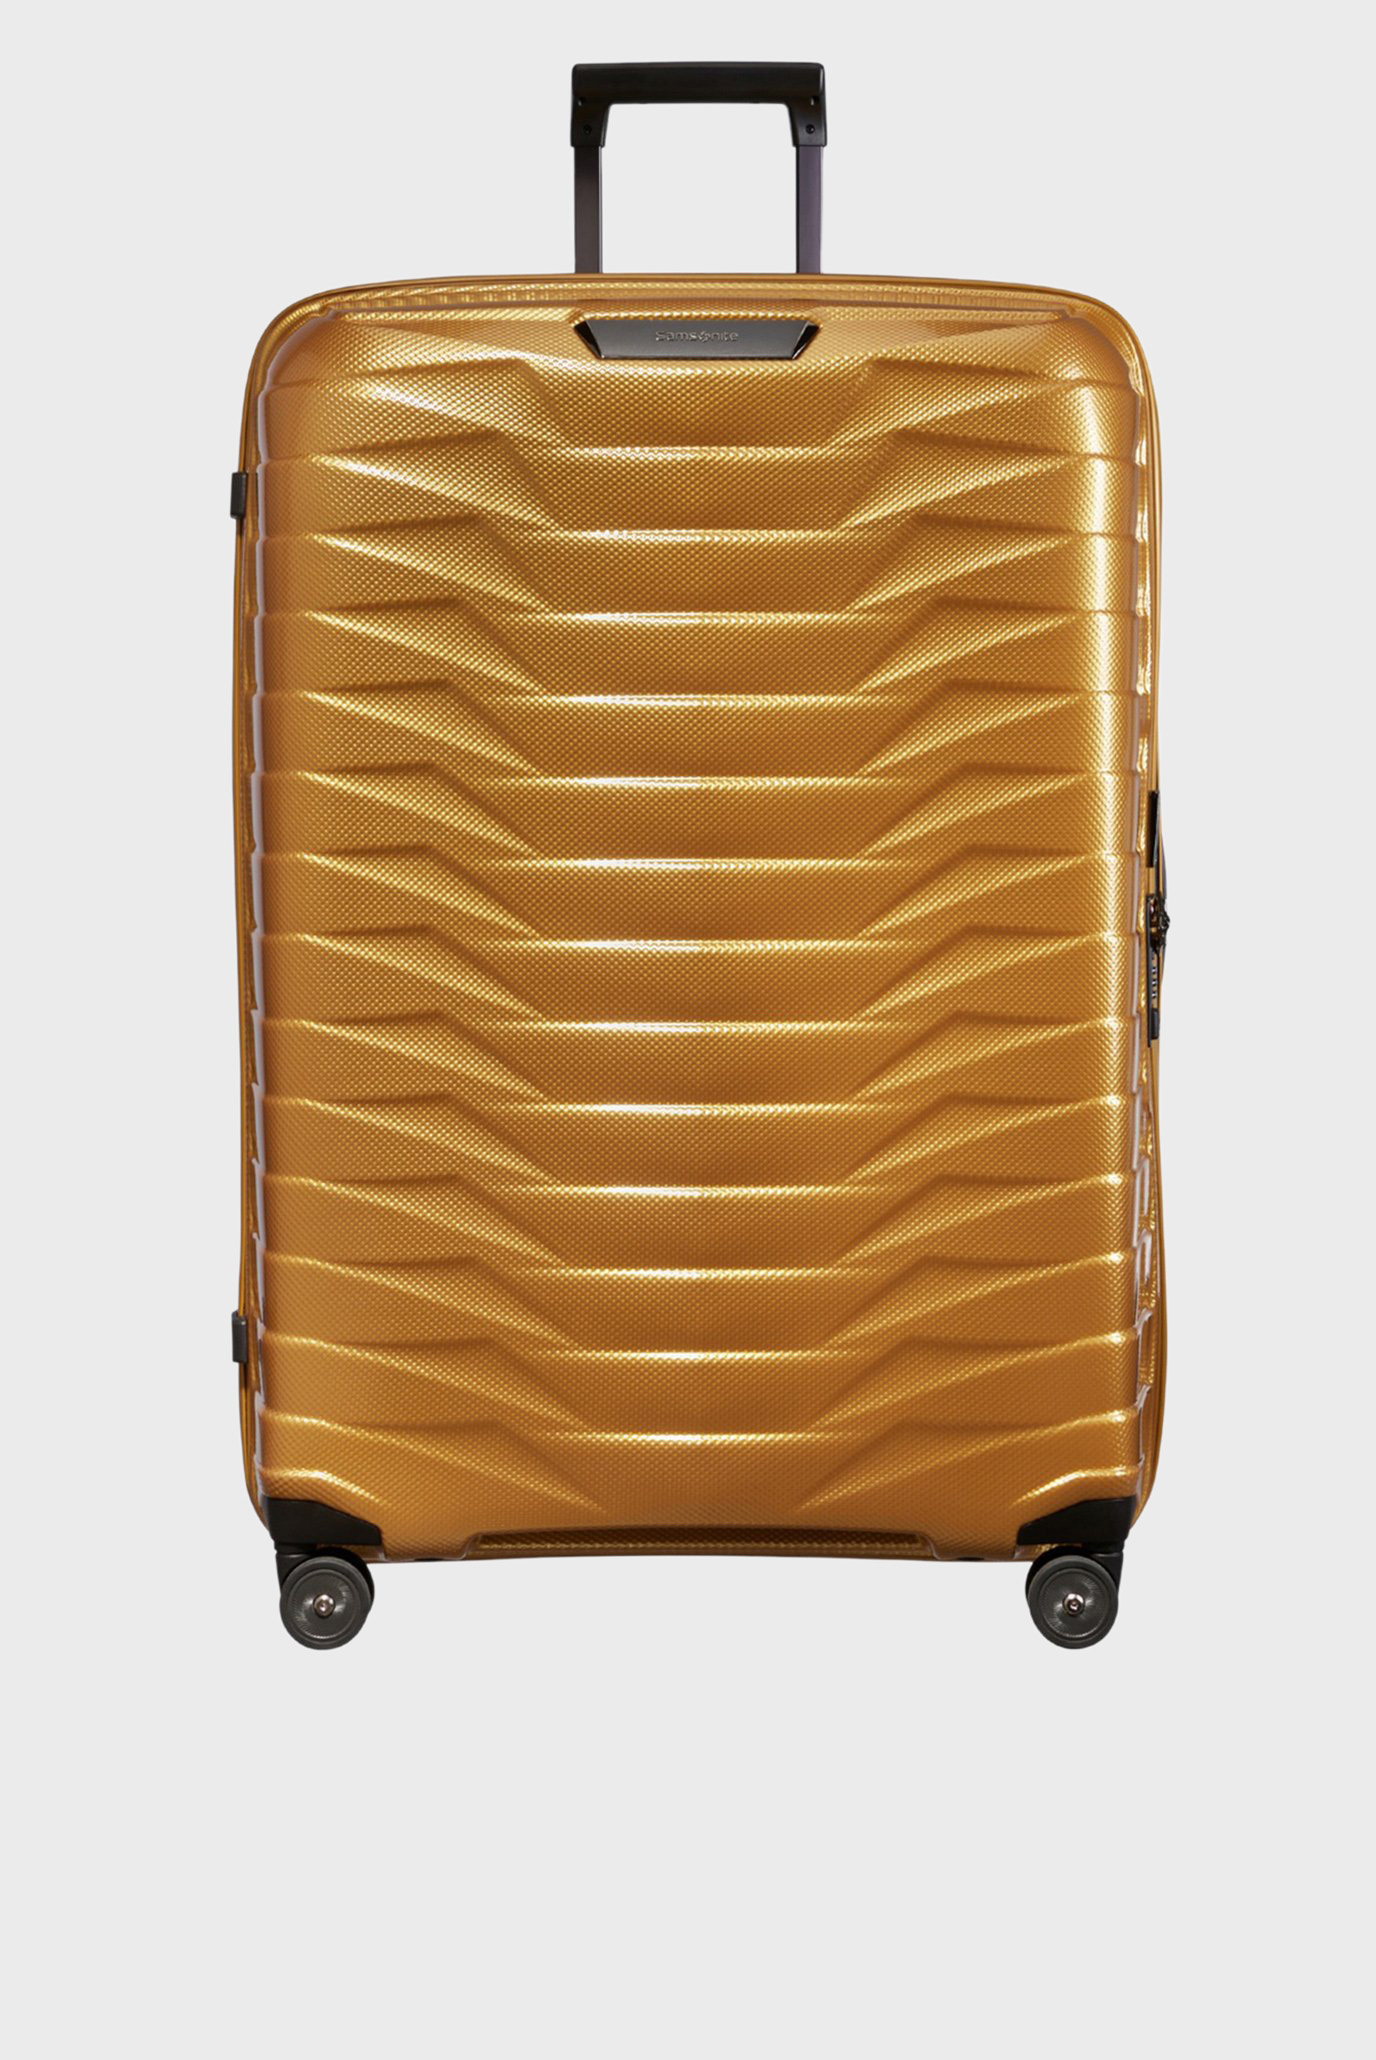 Золотистый чемодан 81 см PROXIS GOLDEN YELLOW 1